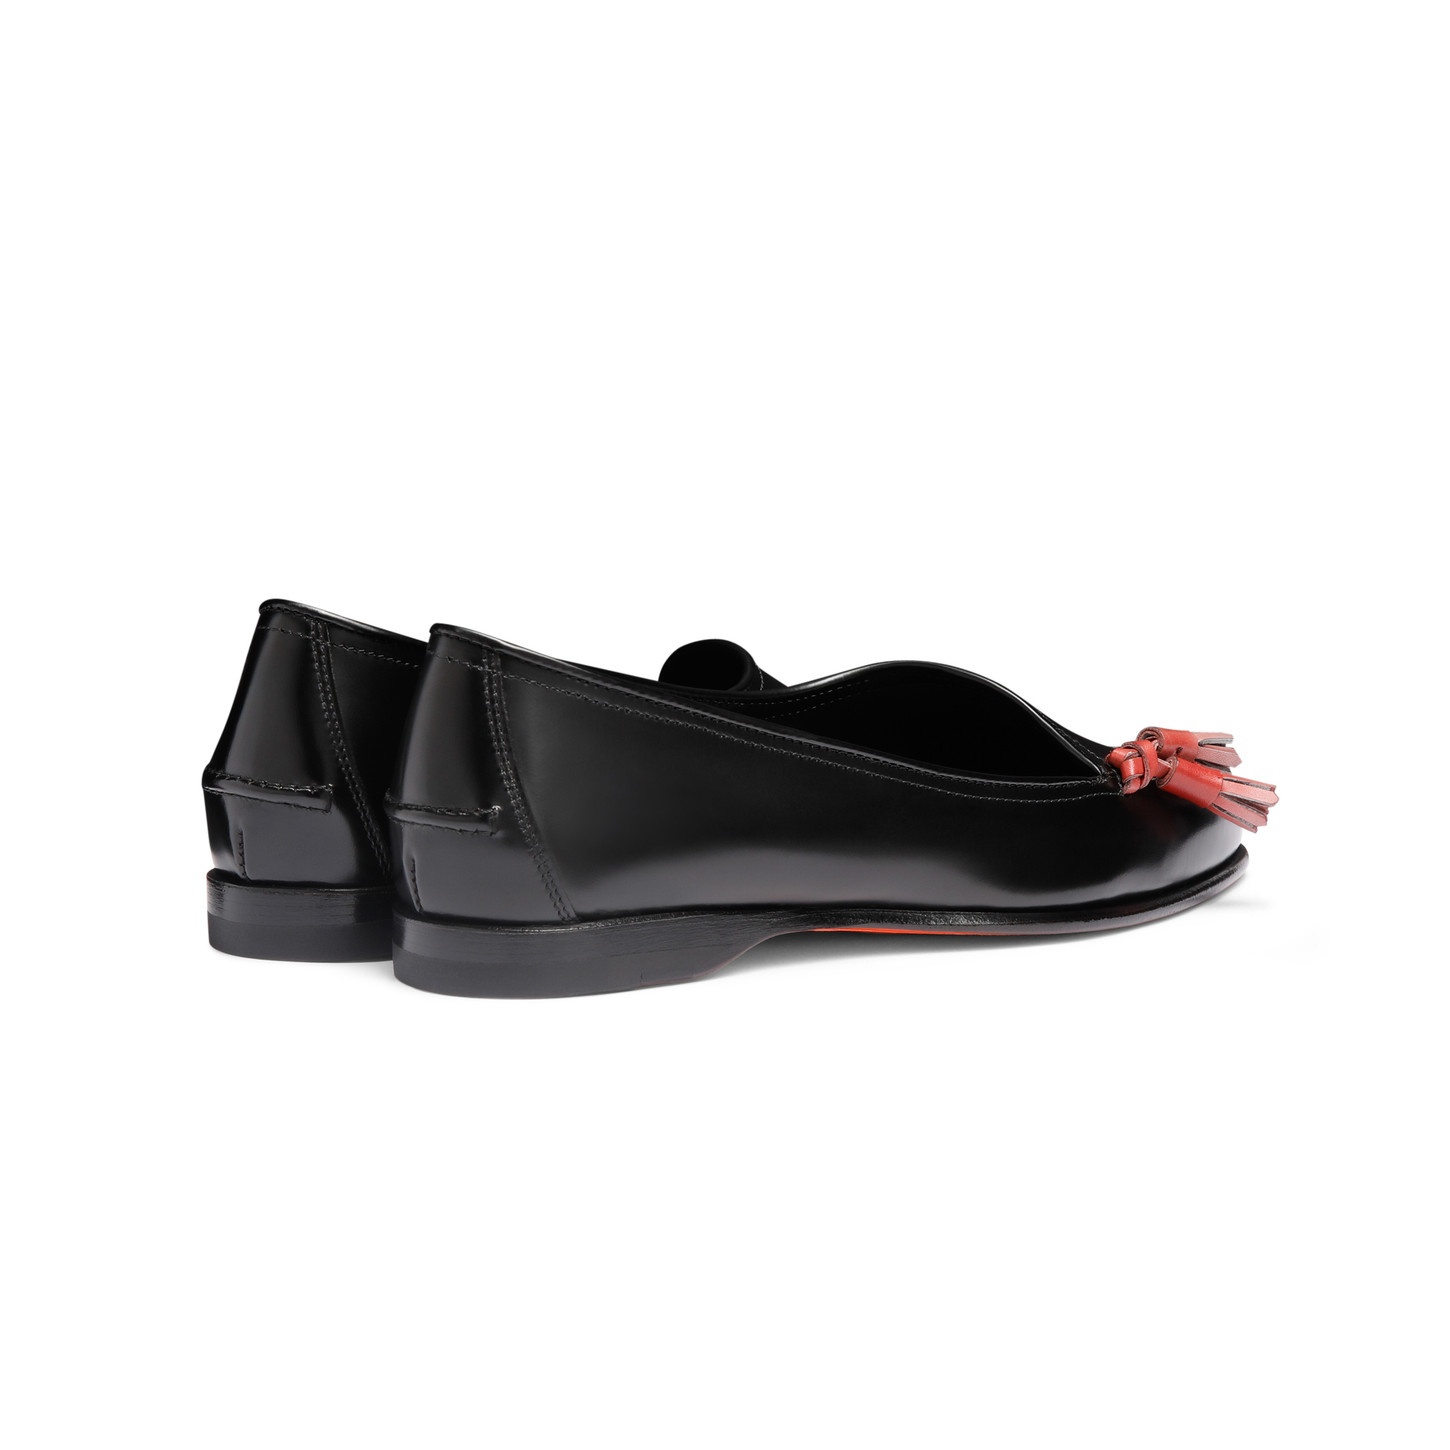 Women's black leather Andrea tassel loafer - 4